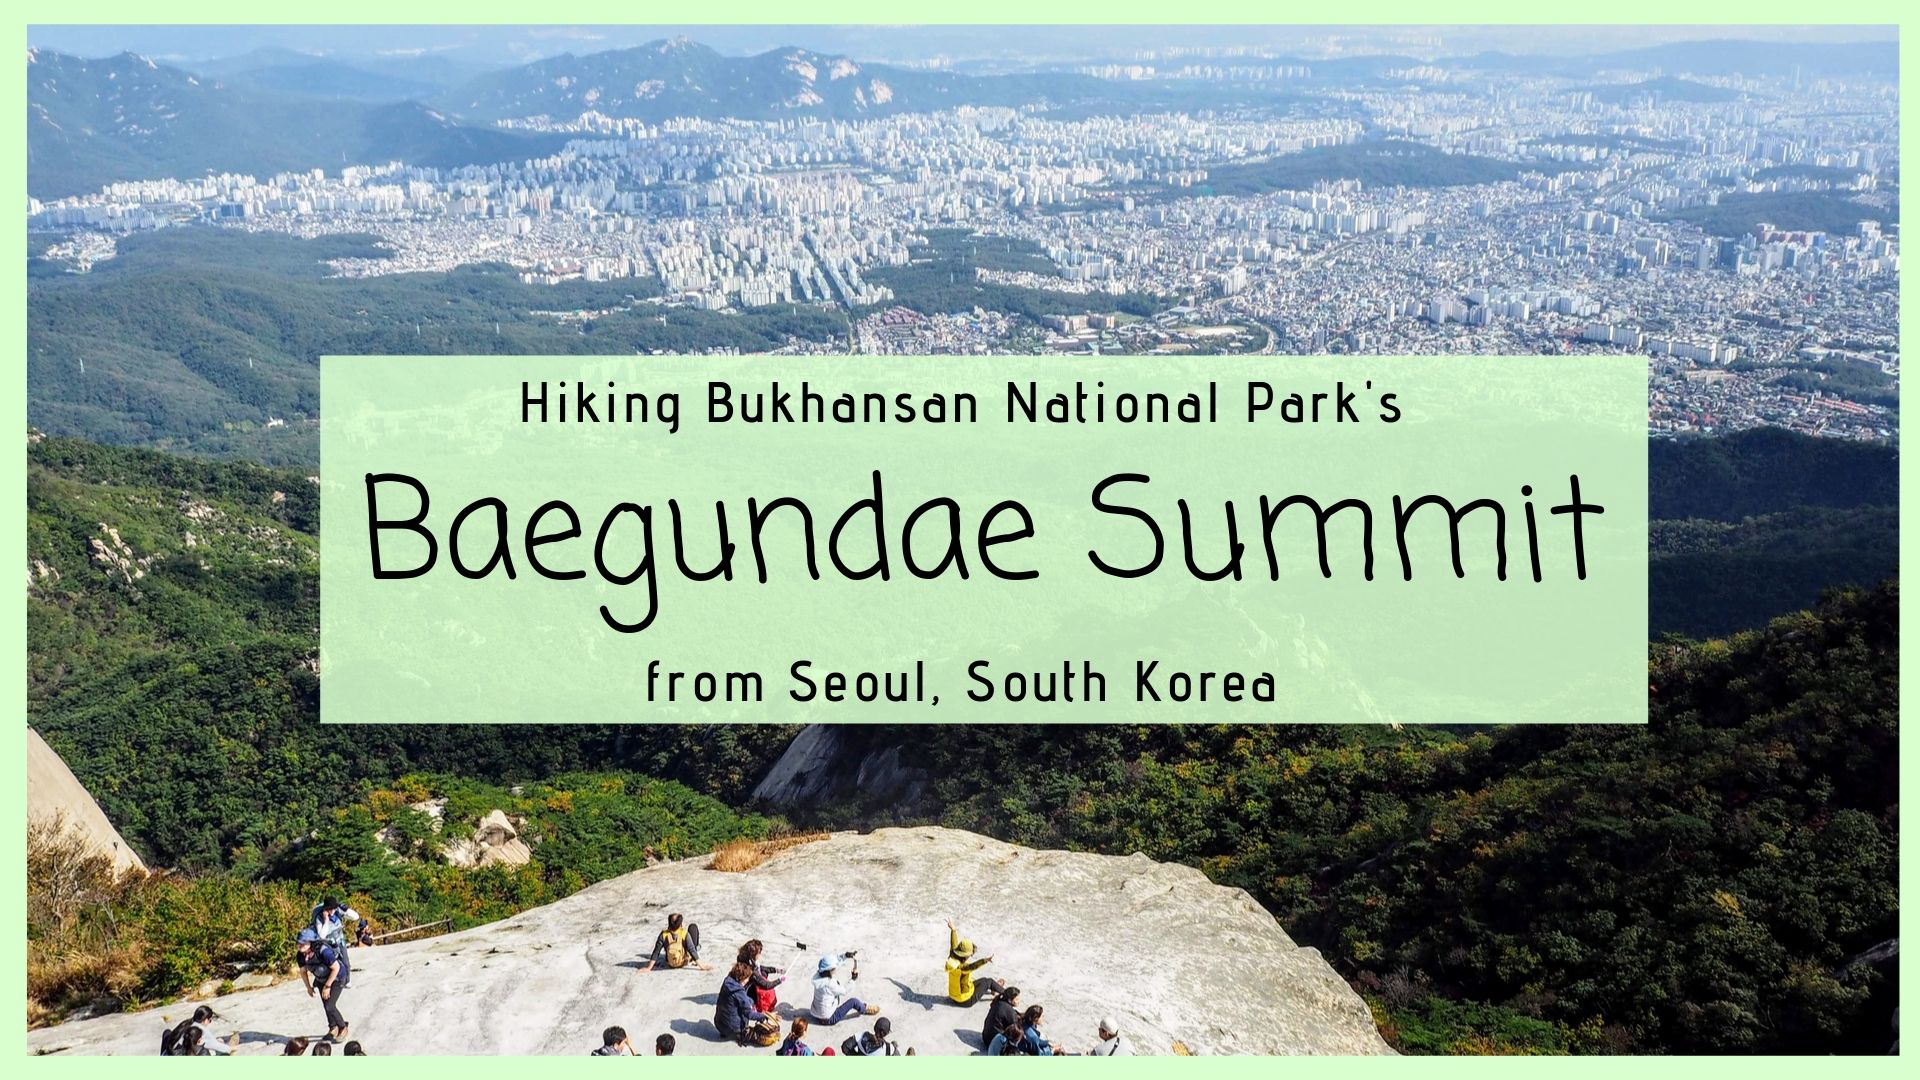 How to Hike Baegundae Summit in Bukhansan National Park, Seoul